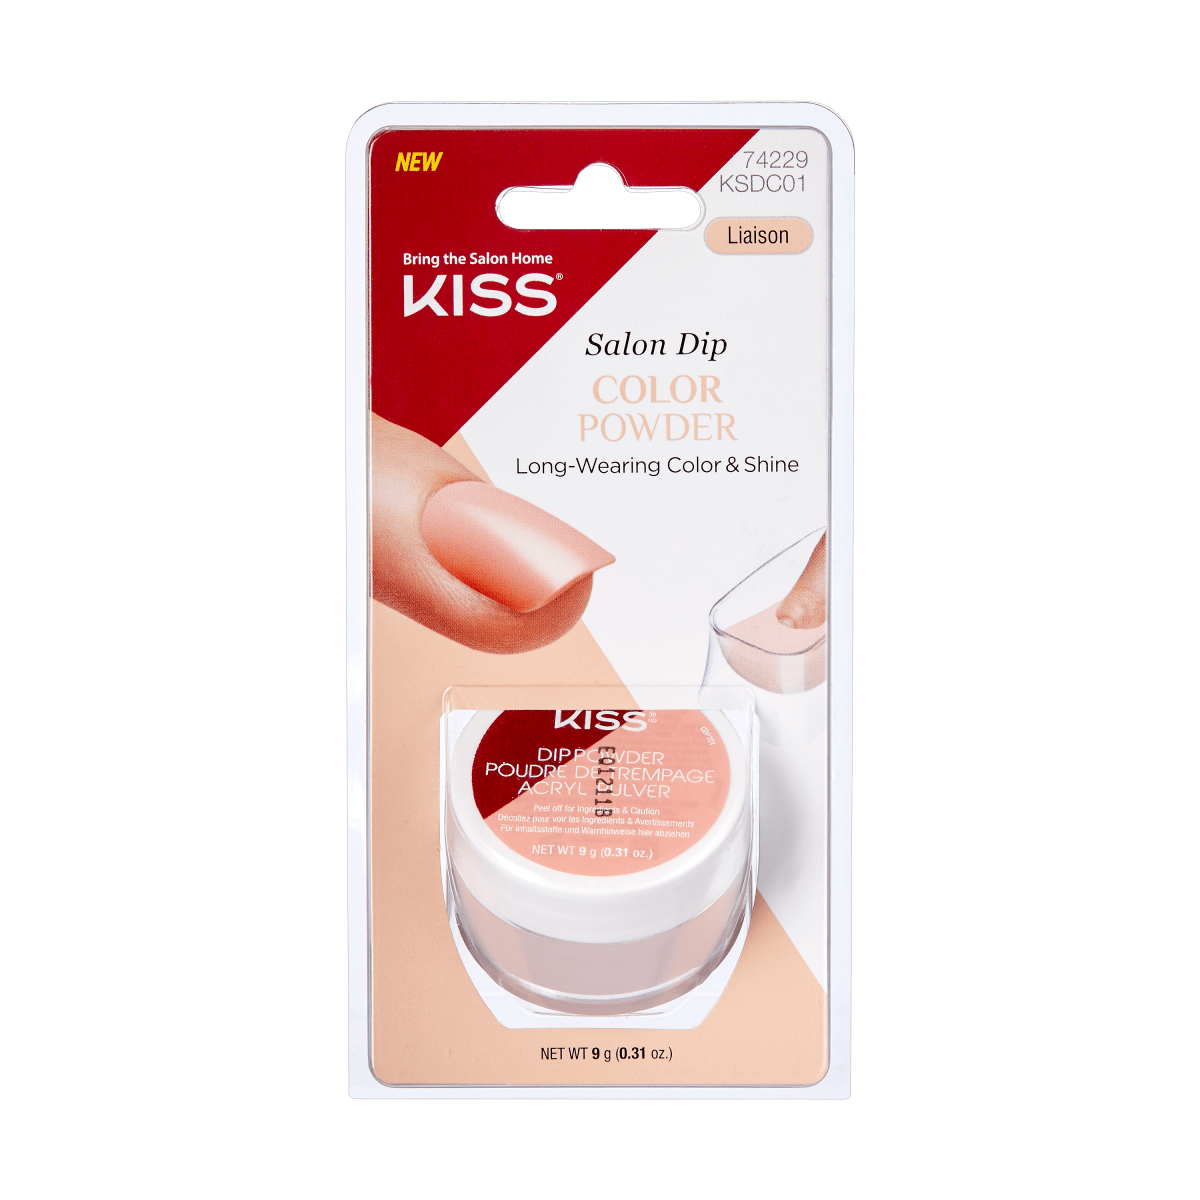 KISS Salon Dip Color Powder - Liaison